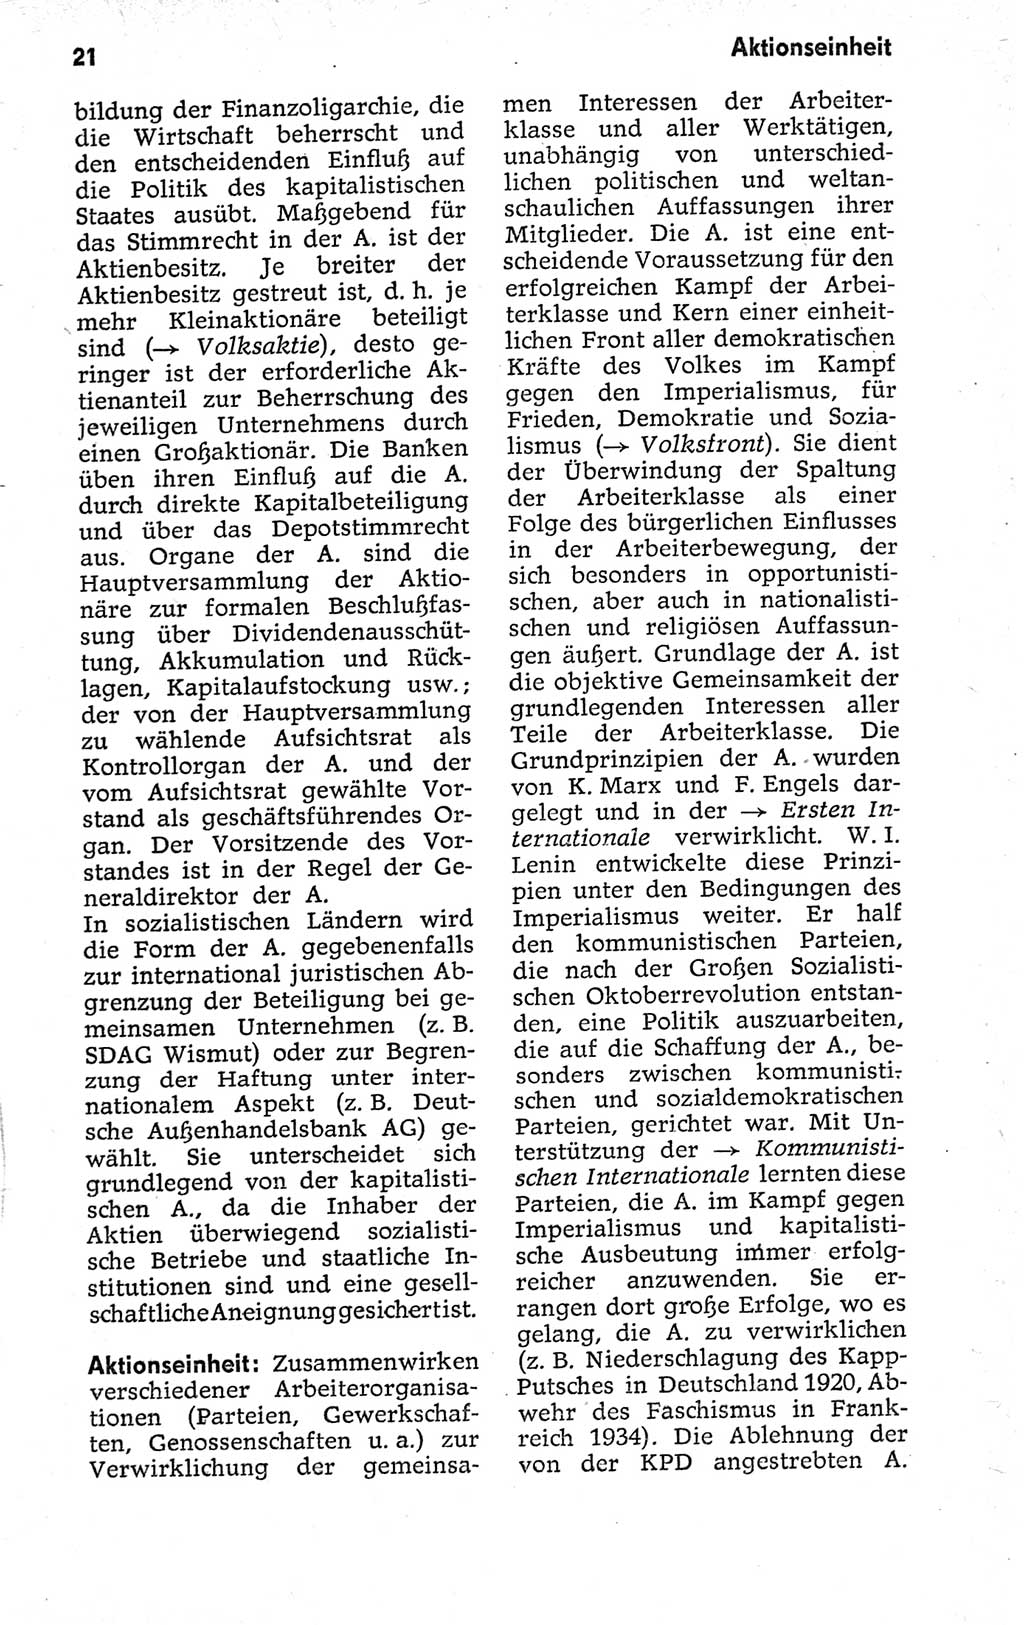 Kleines politisches Wörterbuch [Deutsche Demokratische Republik (DDR)] 1973, Seite 21 (Kl. pol. Wb. DDR 1973, S. 21)